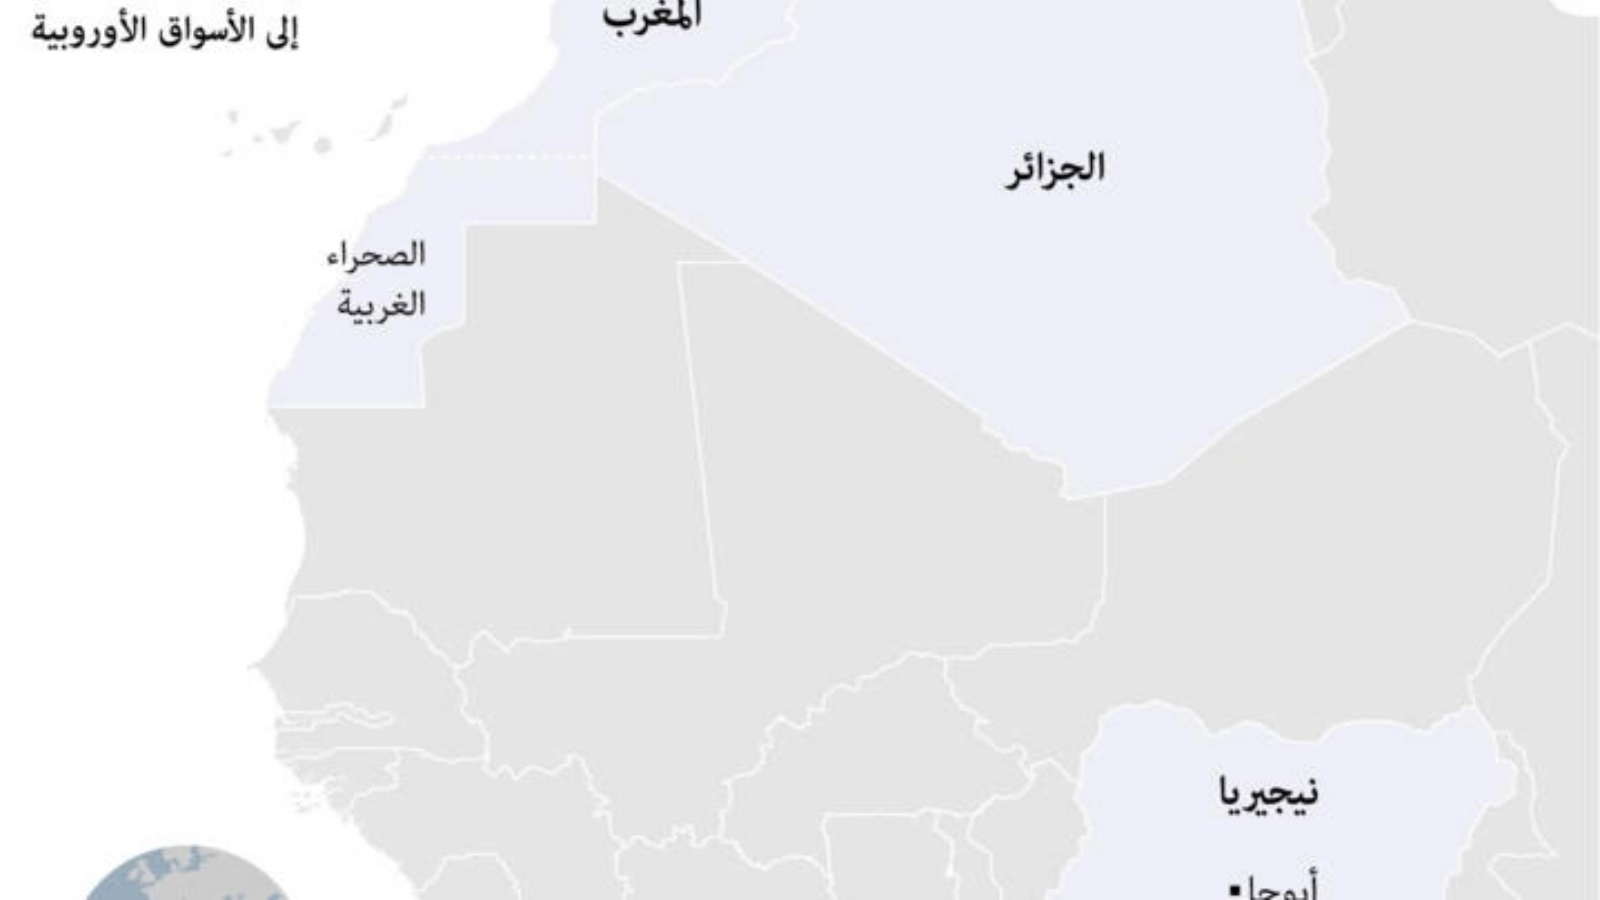 المغرب والجزائر يطمحان لإنجاز مشروعي خطوط أنابيب غاز ضخمين ينطلقان من نيجيريا ليزودا السوق الأوروبية